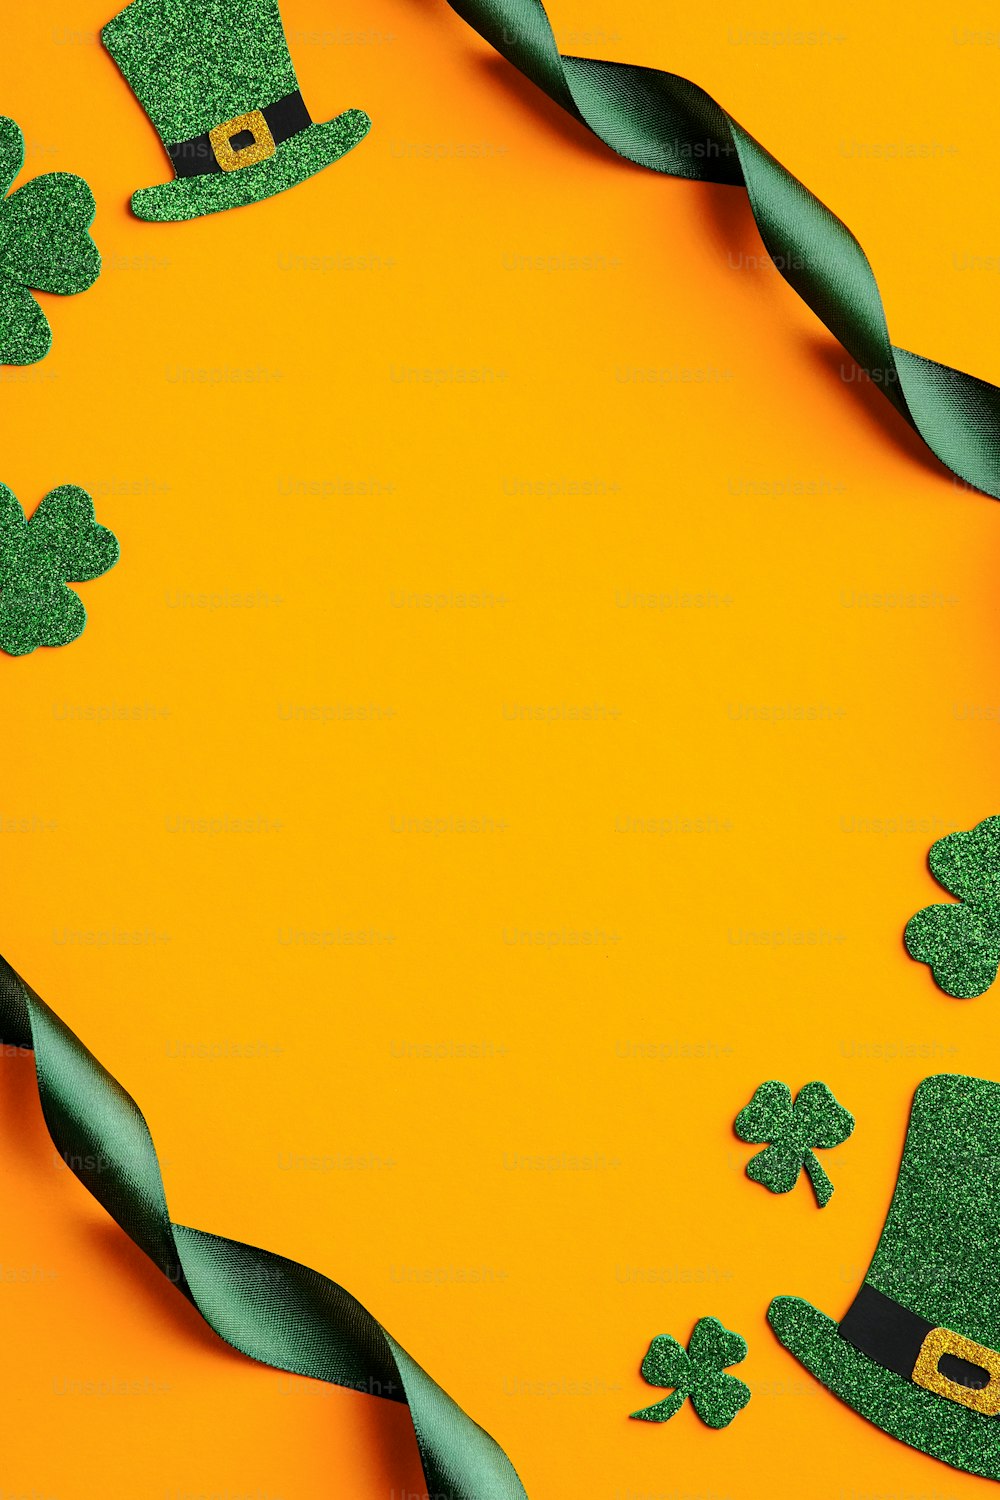 Design dello striscione del giorno di San Patrizio. Cornice realizzata con nastro verde, cappelli da elfo irlandese, foglie di trifoglio su sfondo arancione. Buon concetto di giorno di San Patrizio